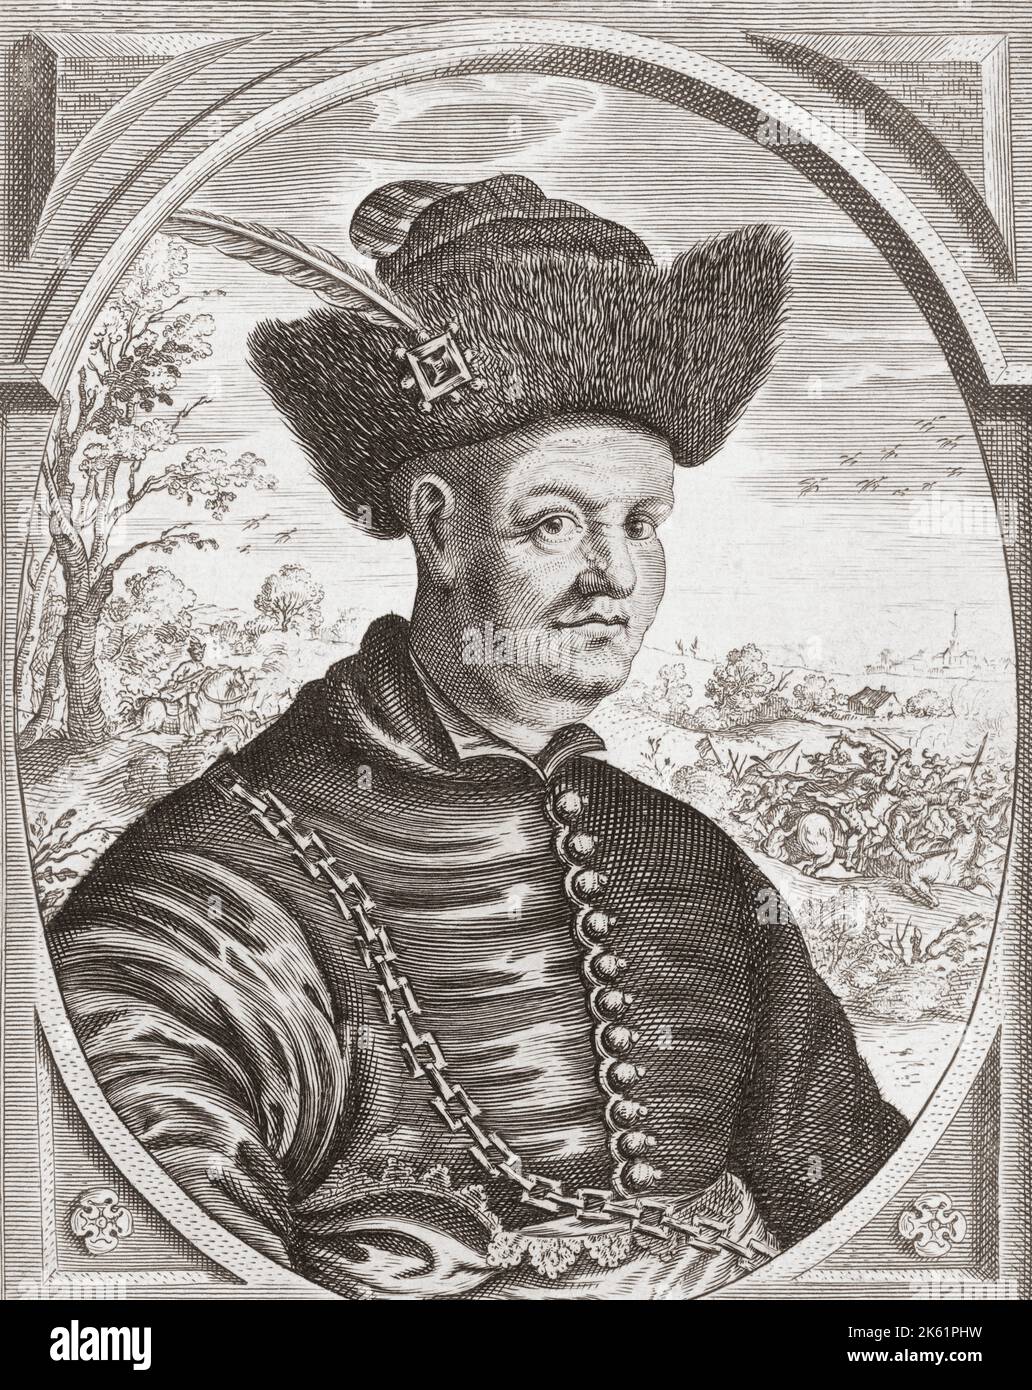 Johann Ludwig Hector, Graf von Isolani, 1586 - 1640. Oberst in der kroatischen Kavallerie in der Armee des Heiligen Römischen Imperators während des Dreißigjährigen Krieges. Nach einer anonymen Arbeit aus dem 17.. Jahrhundert. Stockfoto